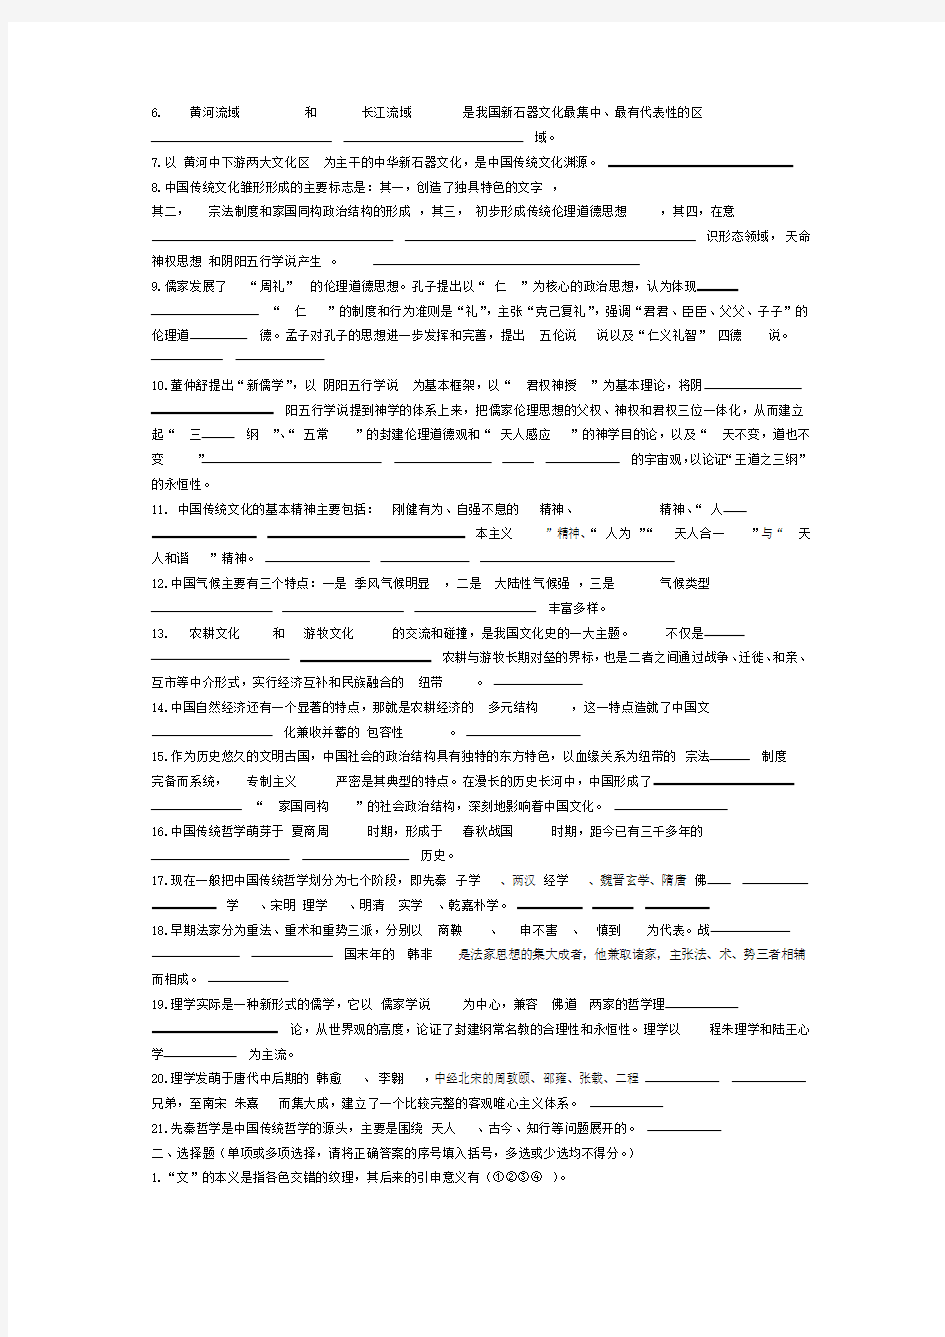 电大中国传统文化概观形成性考核册答案